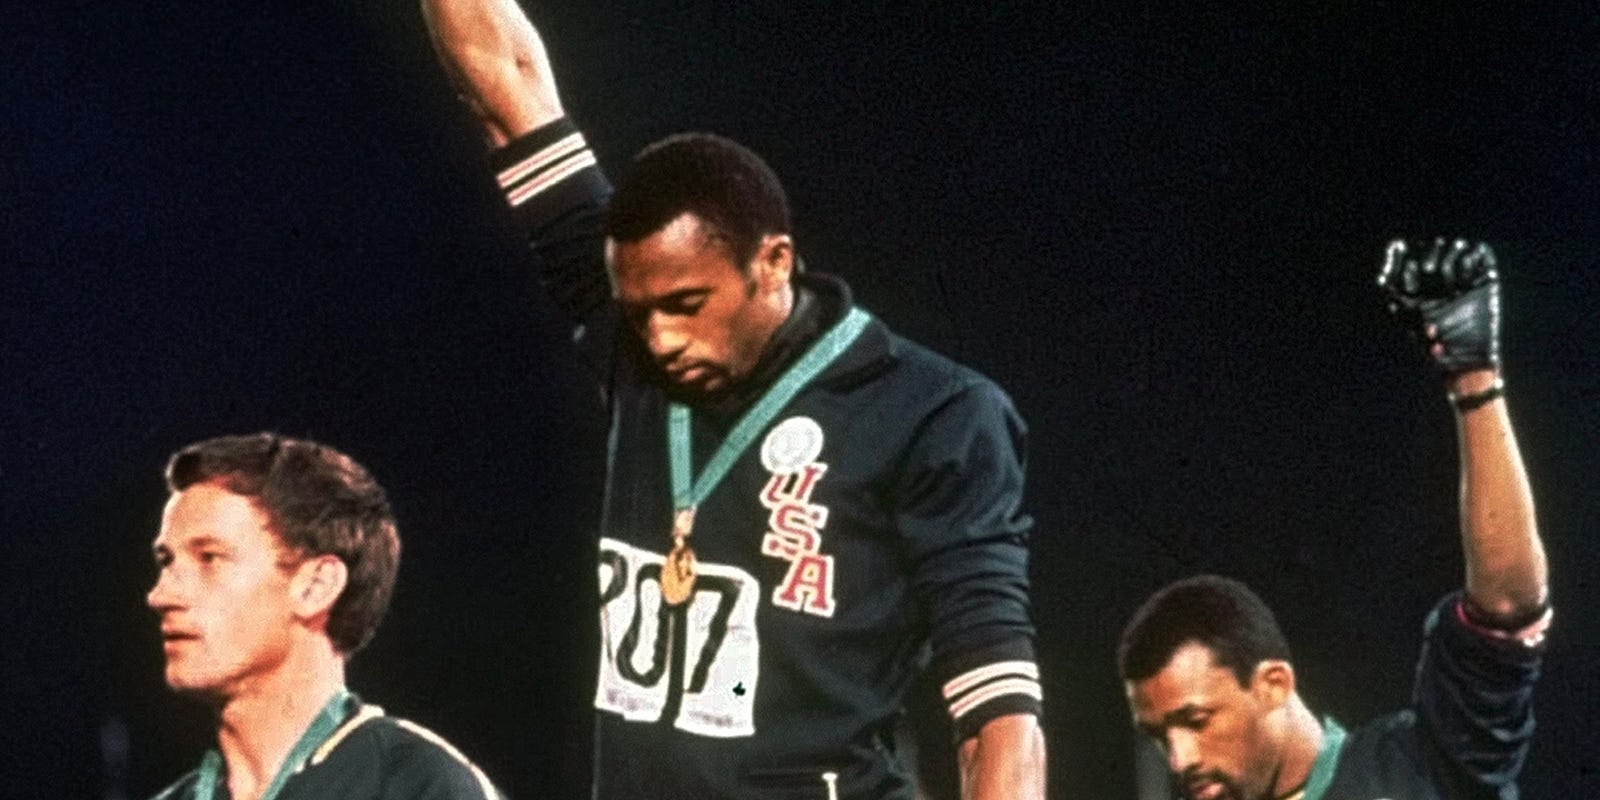 18 Ottobre 1968: 51 anni fa alle Olimpiadi il famoso gesto di Smith e Carlos contro il razzismo